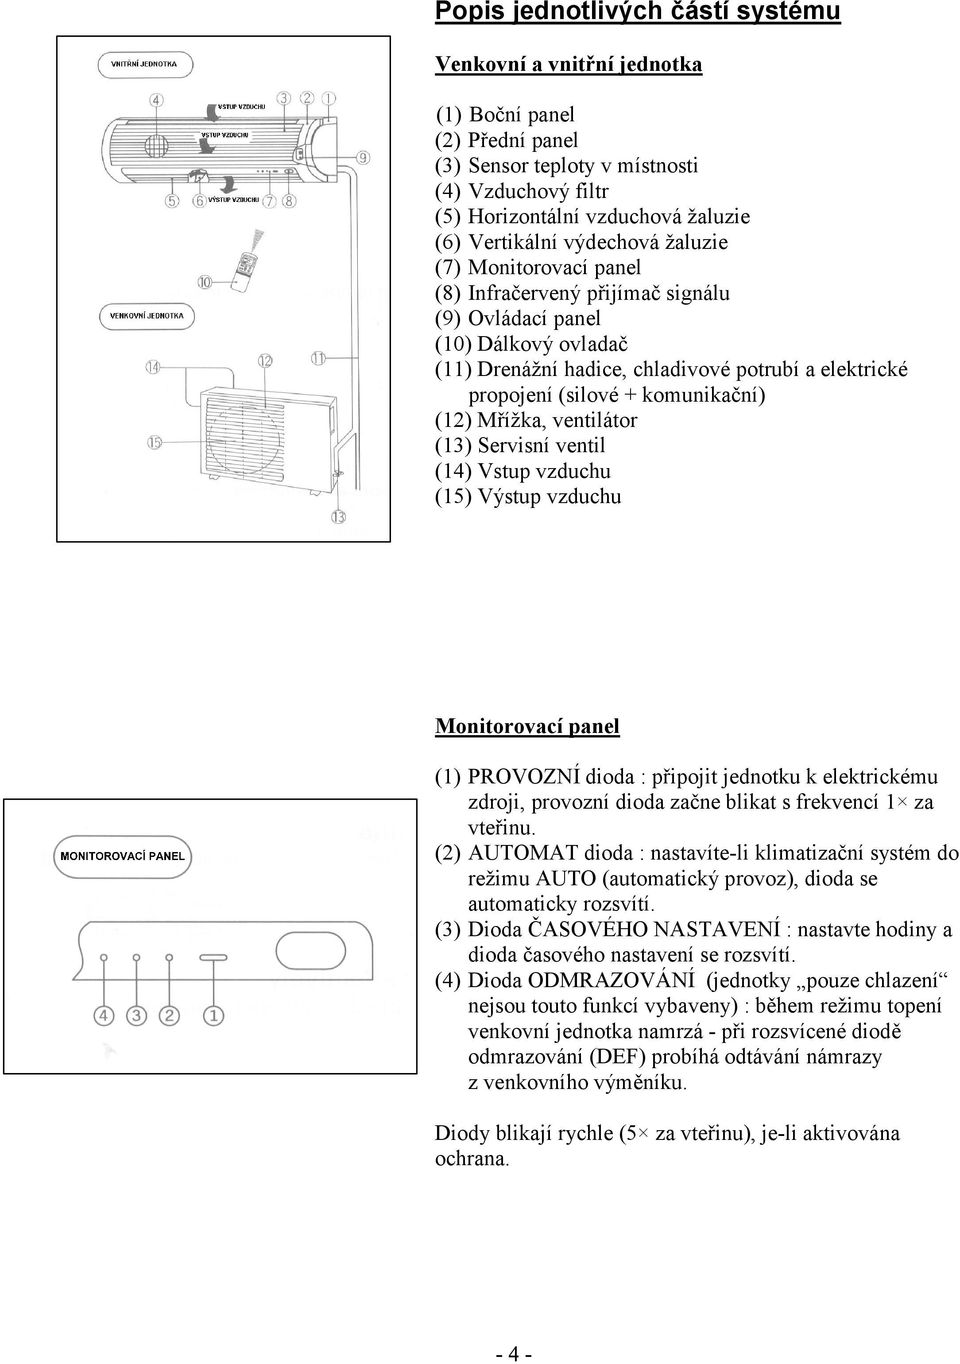 komunikační) (12) Mřížka, ventilátor (13) Servisní ventil (14) Vstup vzduchu (15) Výstup vzduchu Monitorovací panel (1) PROVOZNÍ dioda : připojit jednotku k elektrickému zdroji, provozní dioda začne